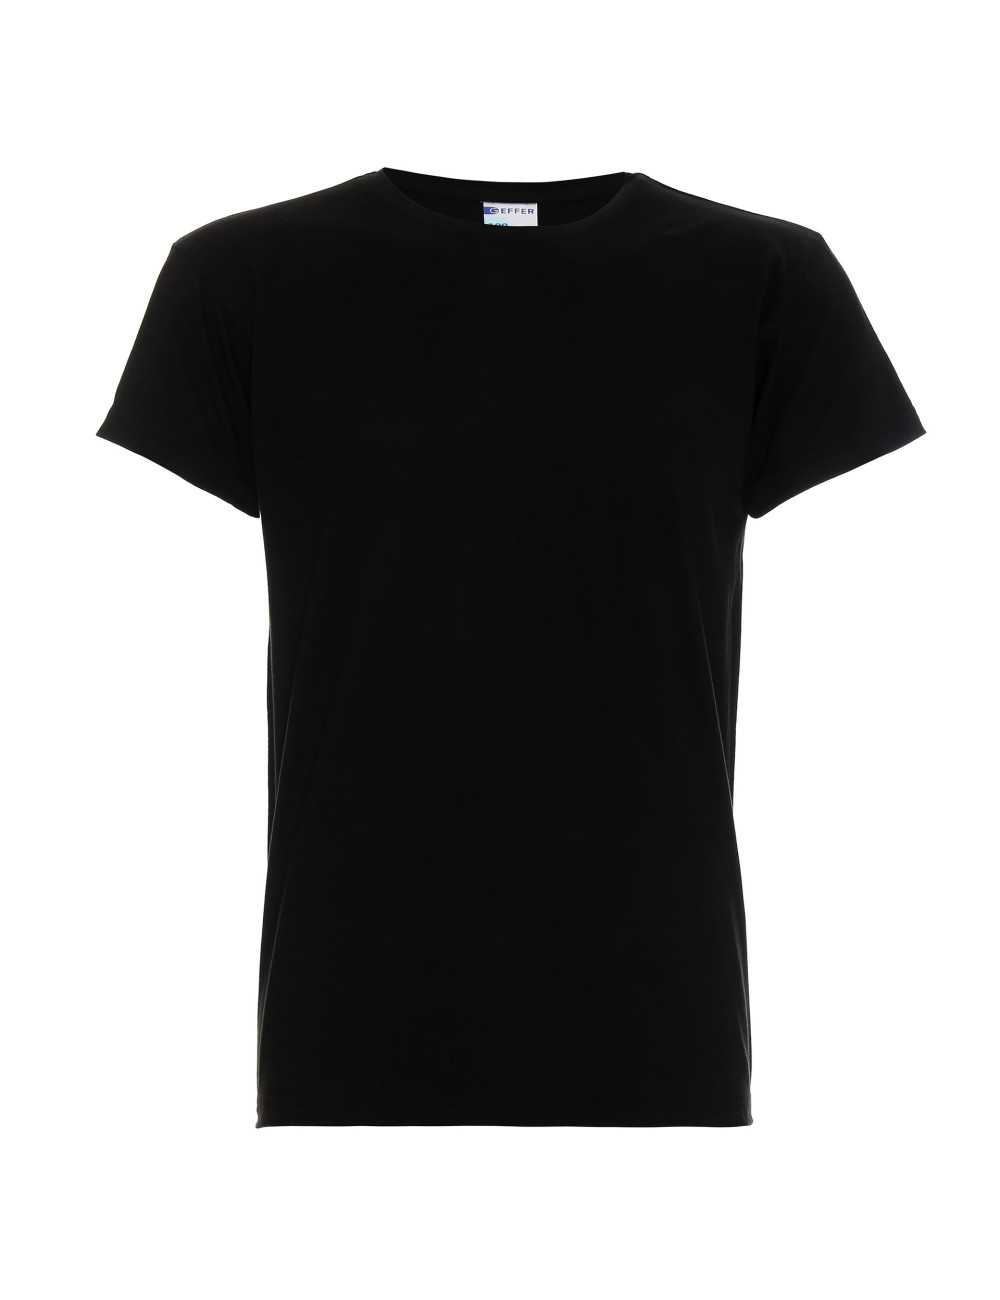 Herren T-Shirt 100 schwarz Geffer